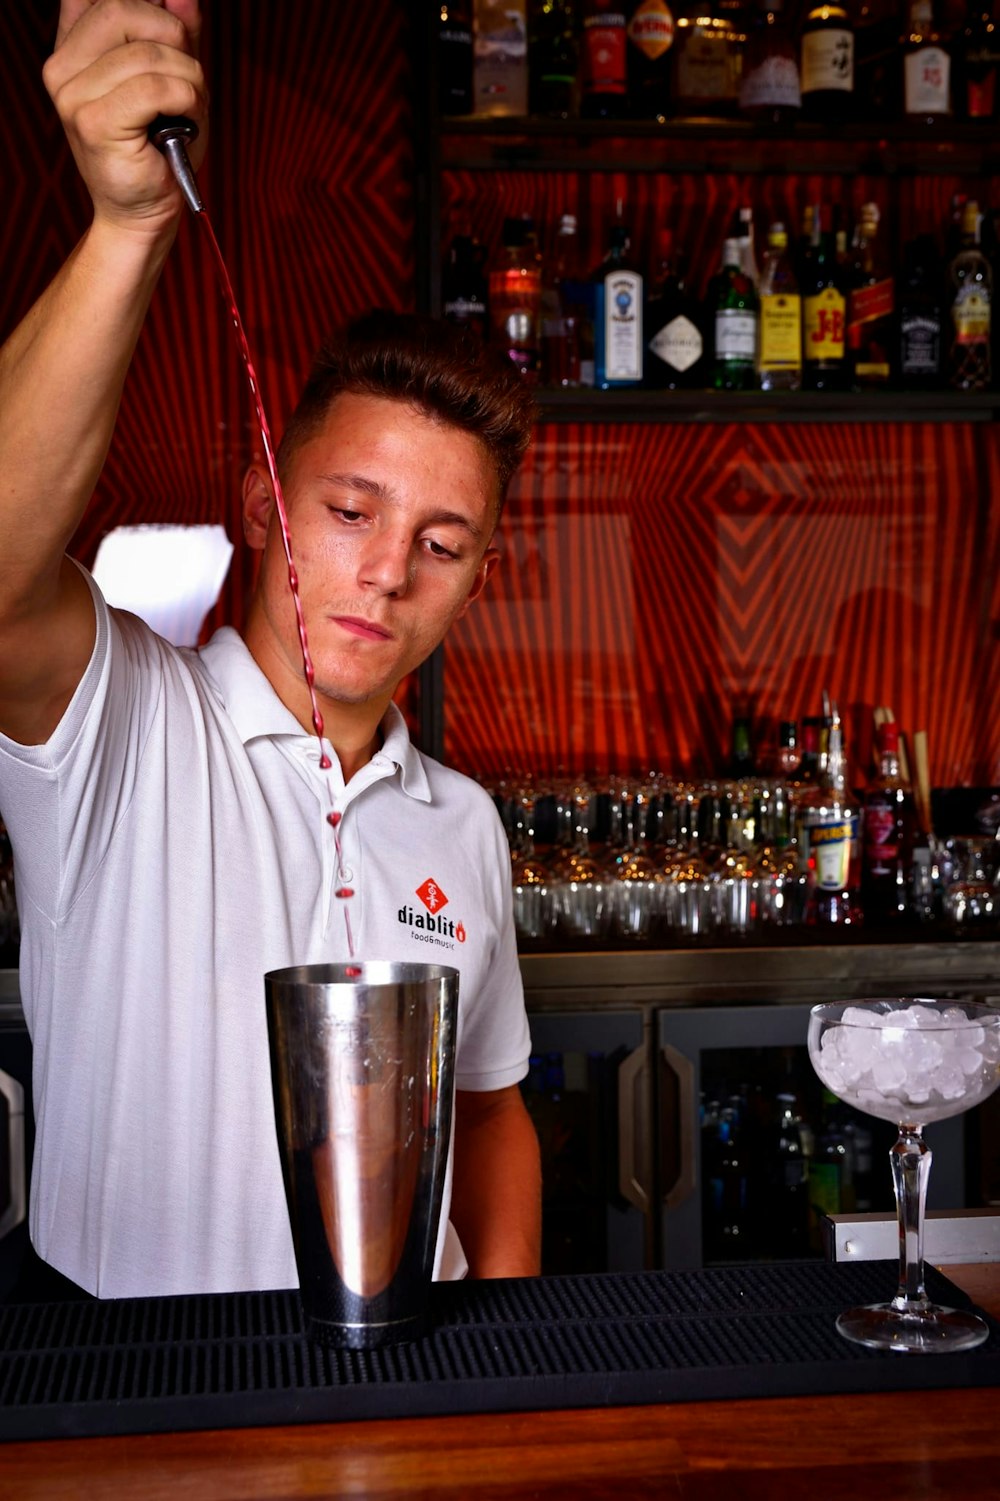 a man in a white shirt is behind a bar